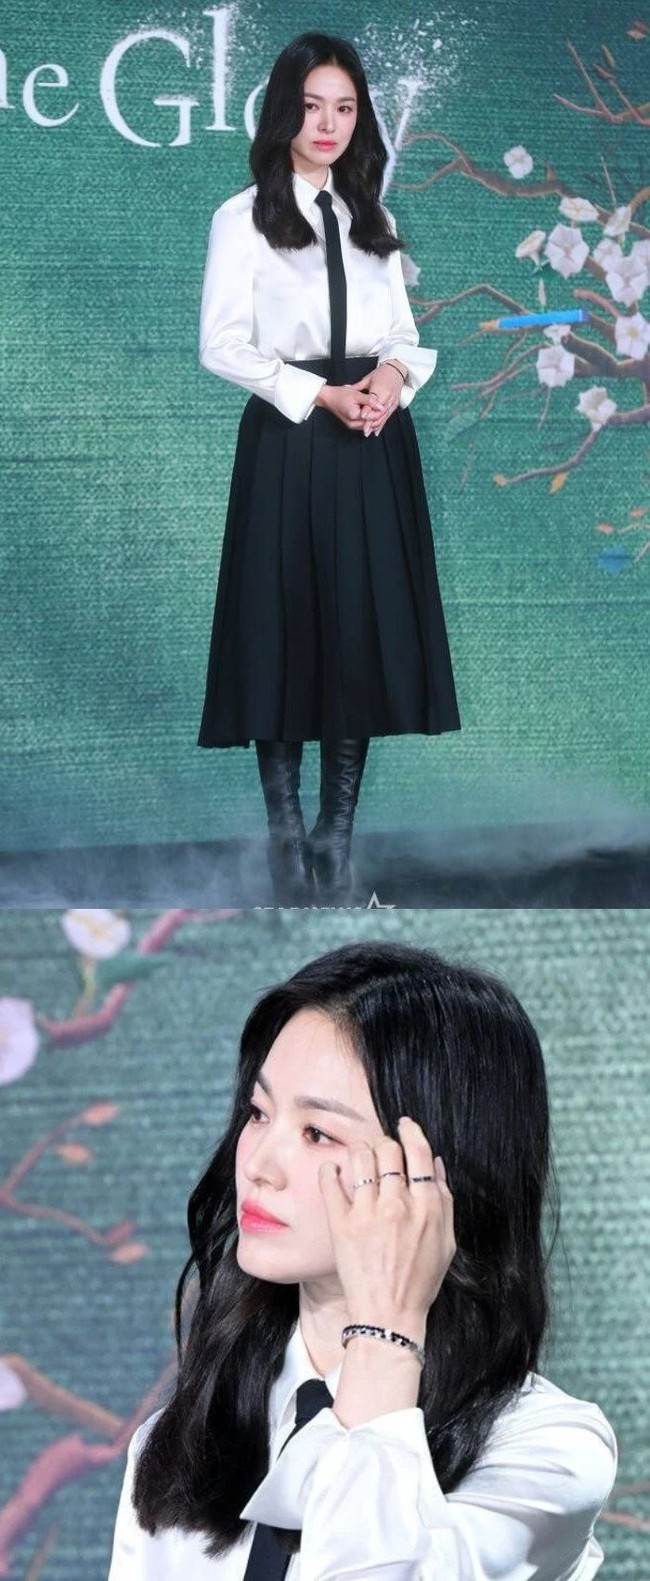 Nhan sắc của Song Hye Kyo tỏa sáng trong buổi họp báo ra mắt phim mới 'The Glory' - Ảnh 3.